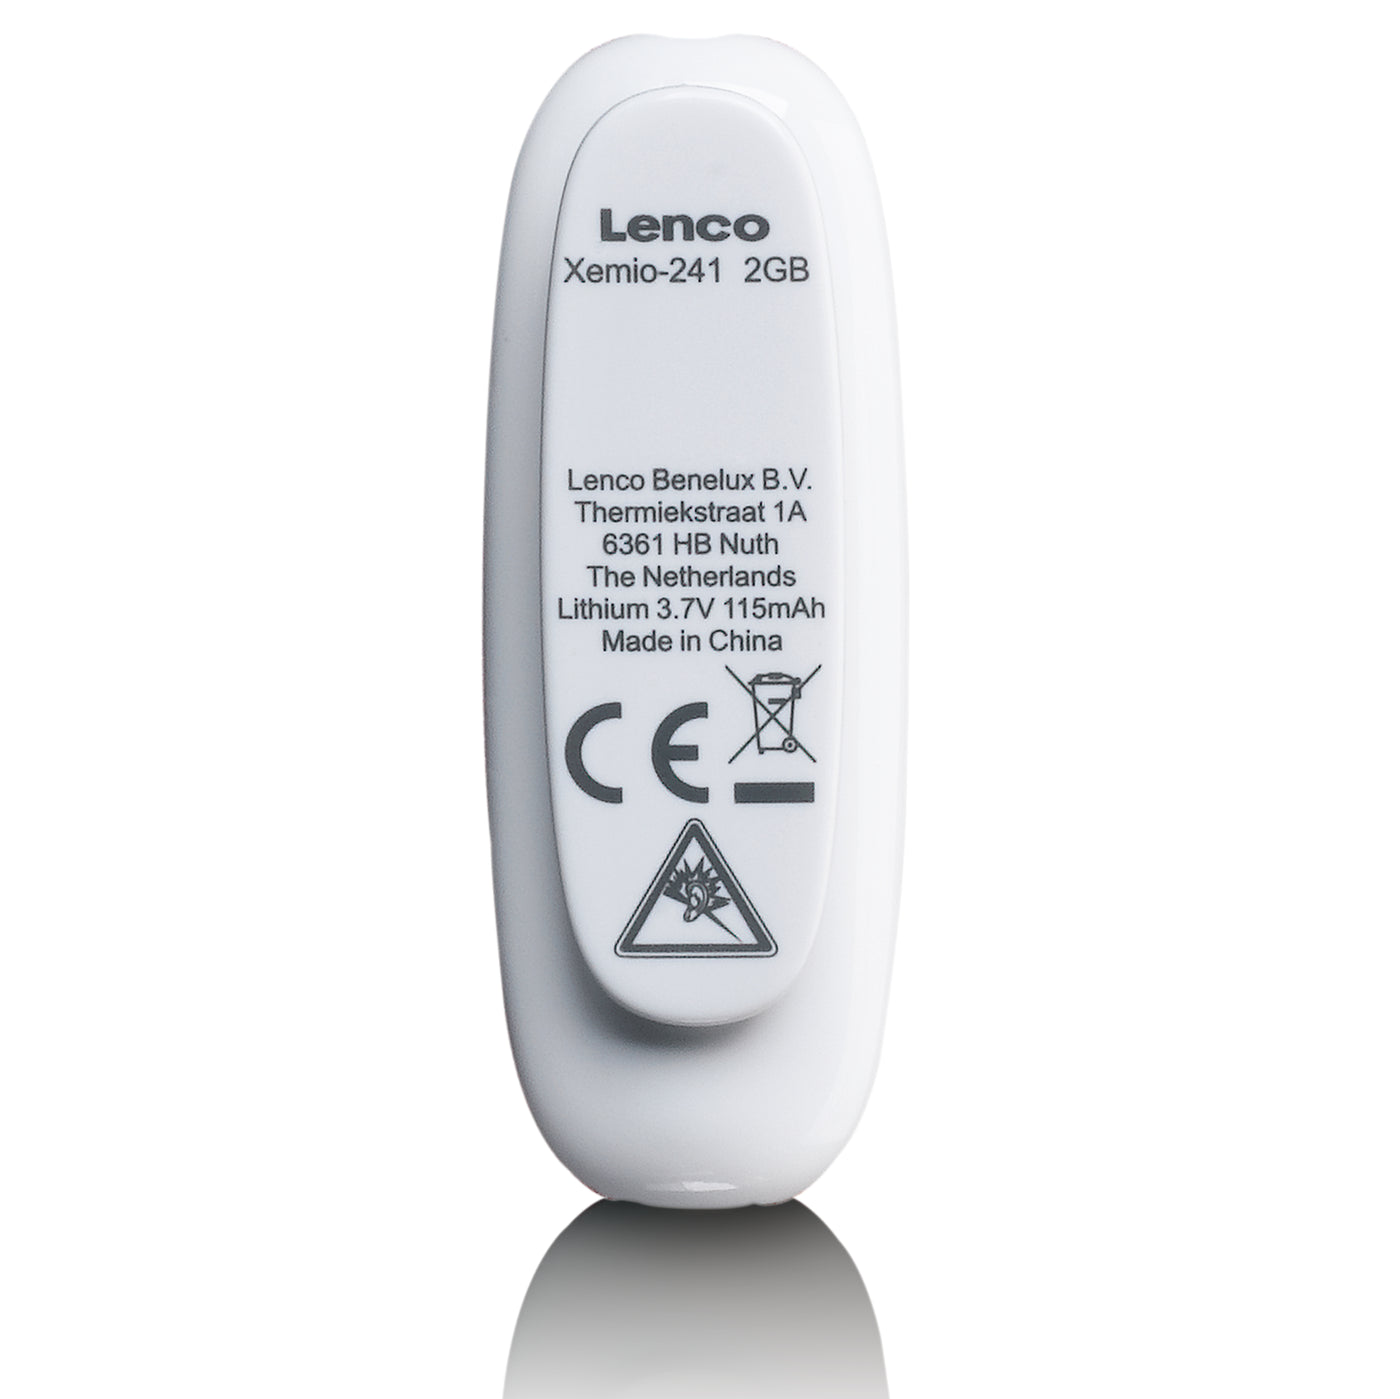 LENCO Xemio-241GY - Odtwarzacz MP3 Clip z pamięcią 2 GB - Szary